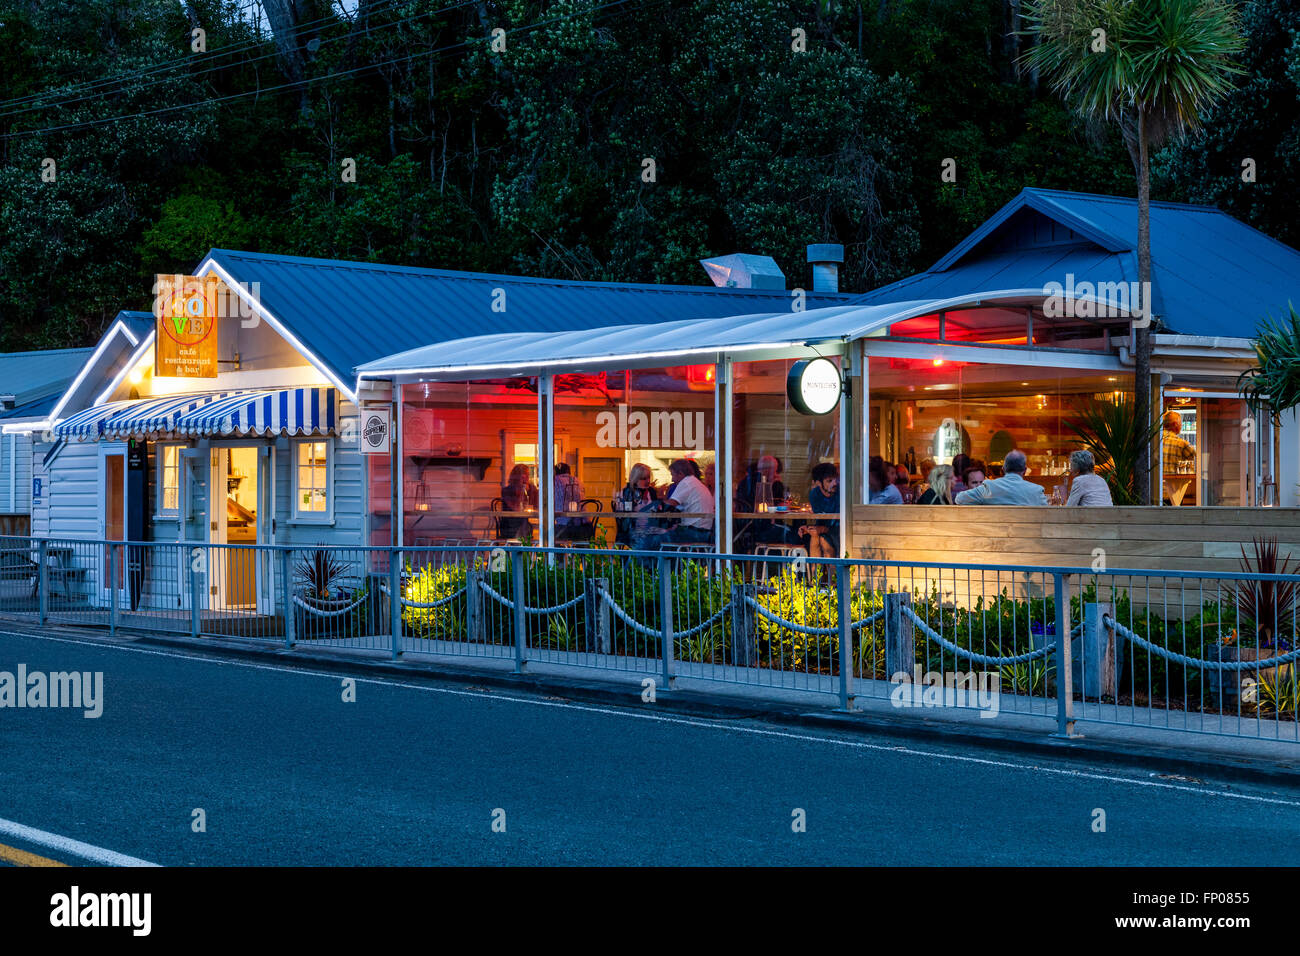 The Cove Cafe/Restaurant, Waipu Cove, Waipu, North Island, New